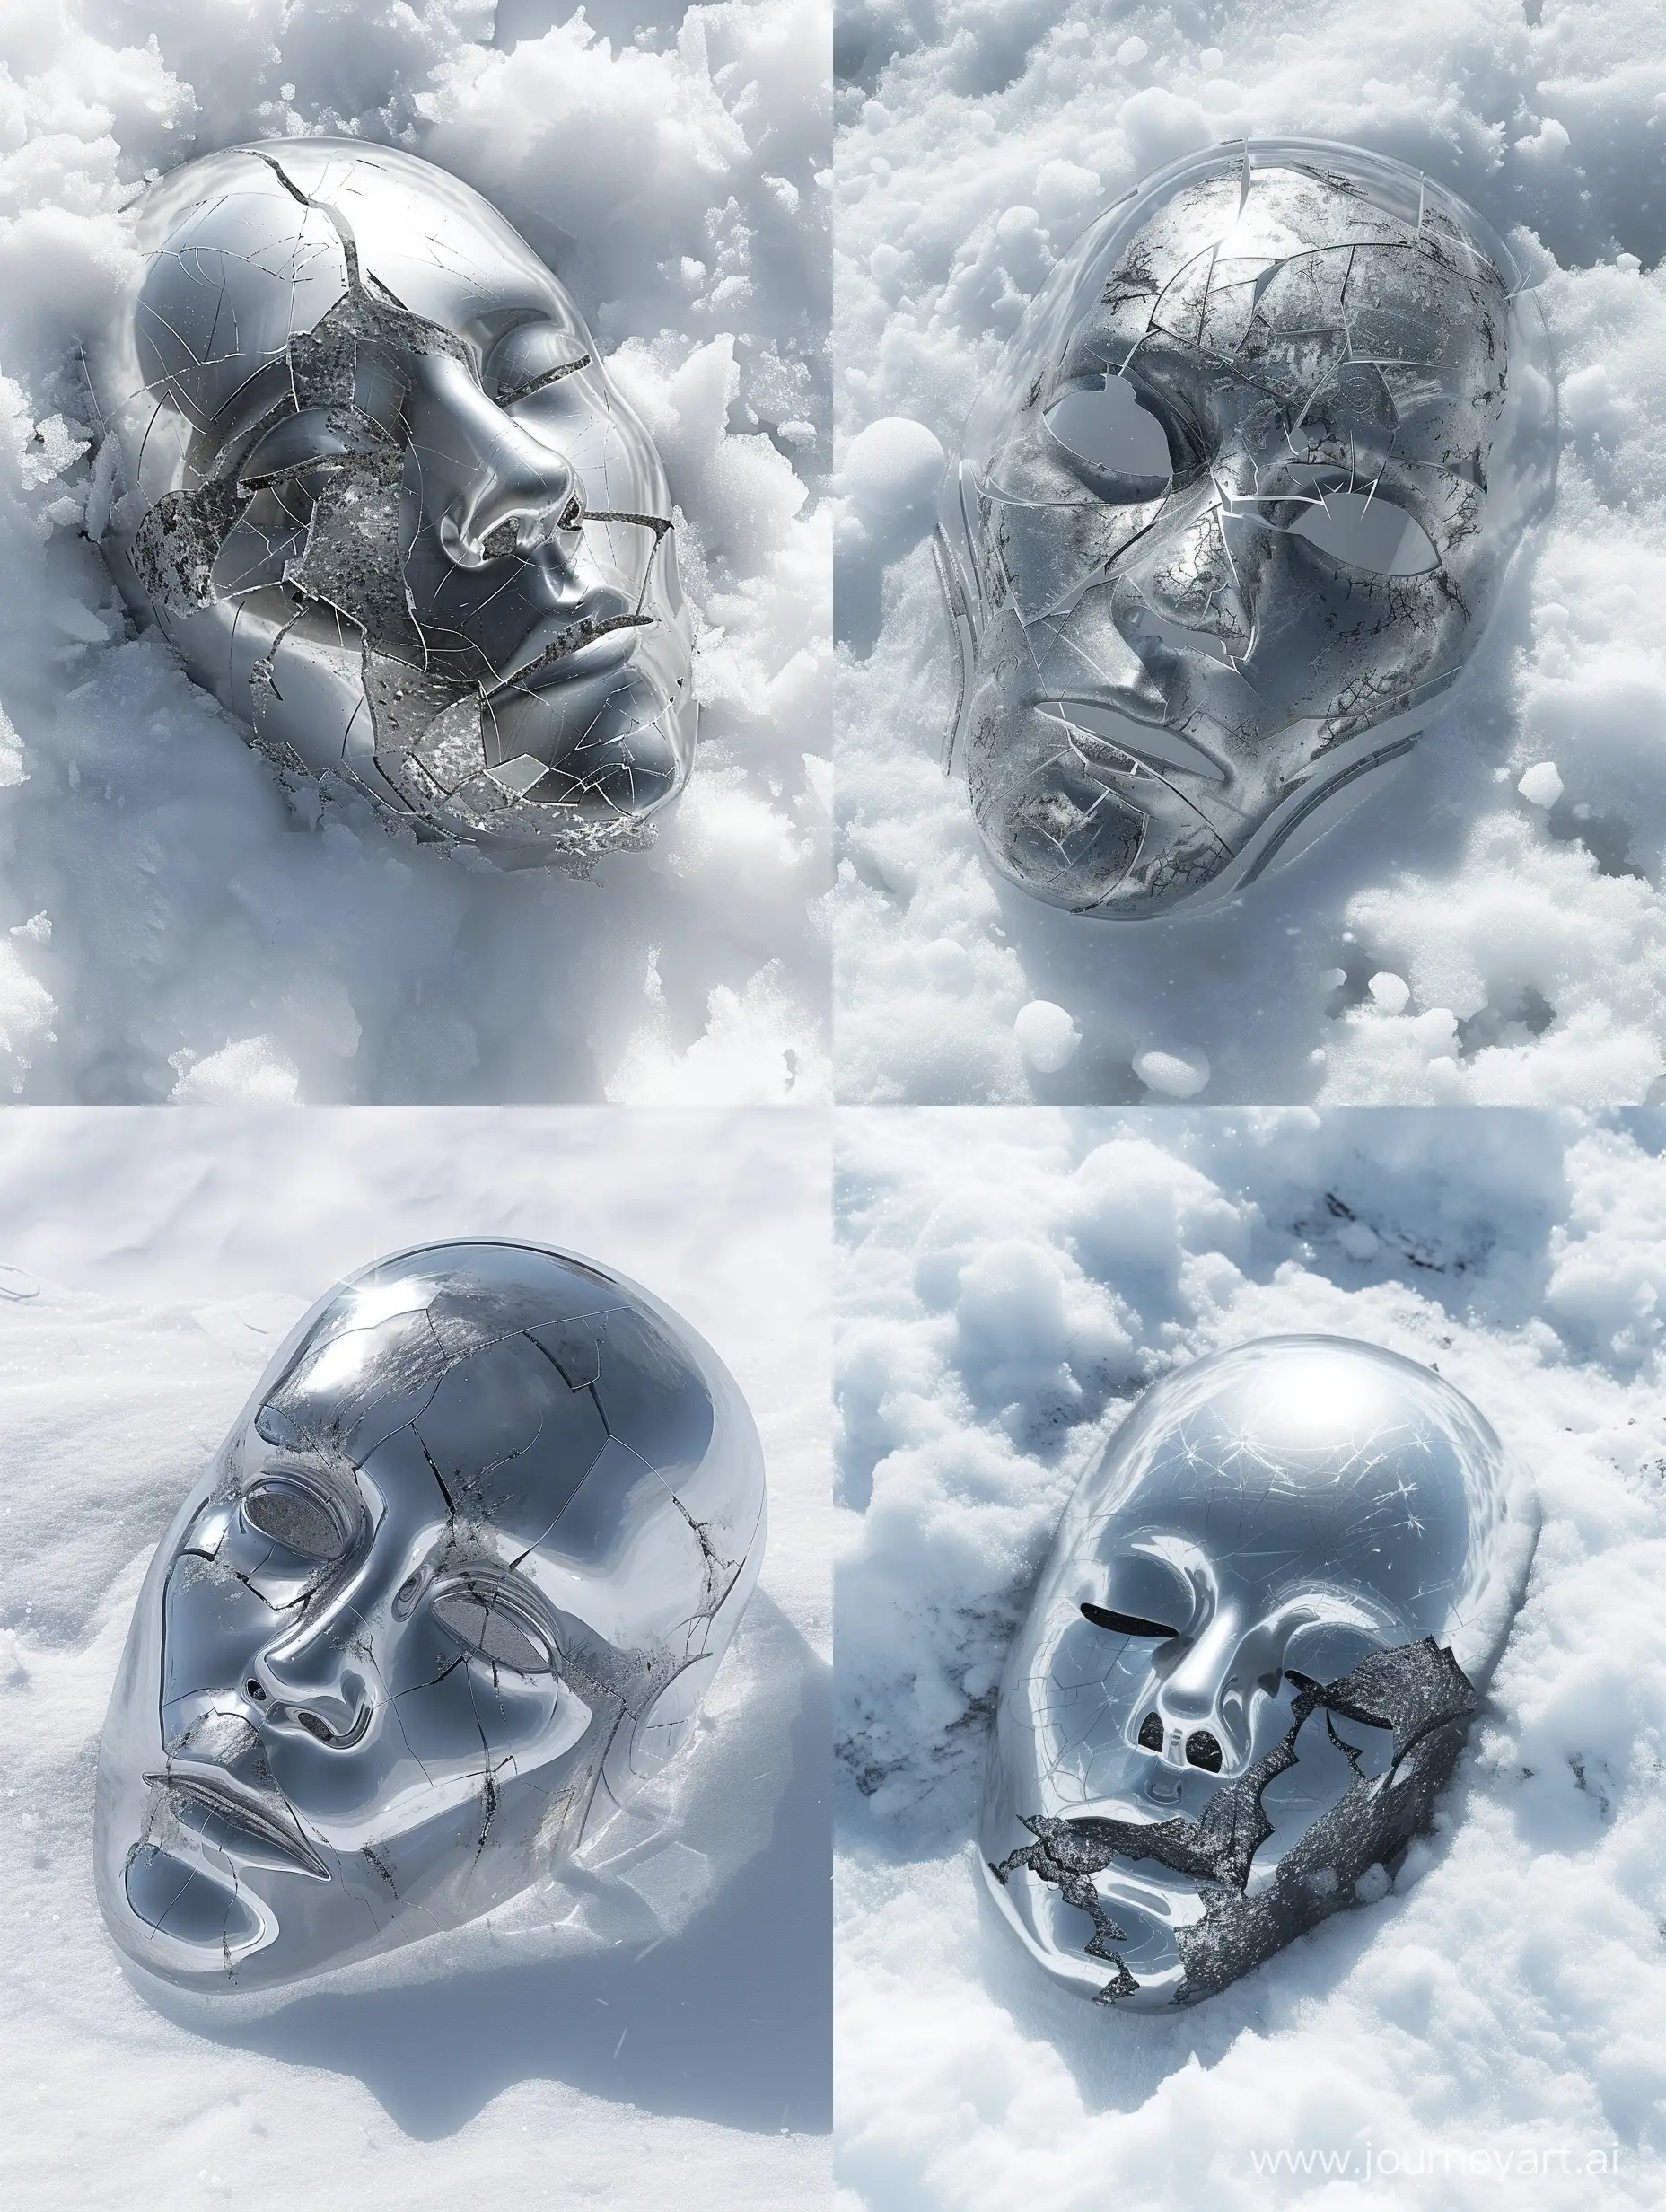 Futuristic-SciFi-Mask-in-Snow-Dark-Souls-Inspired-Album-Cover